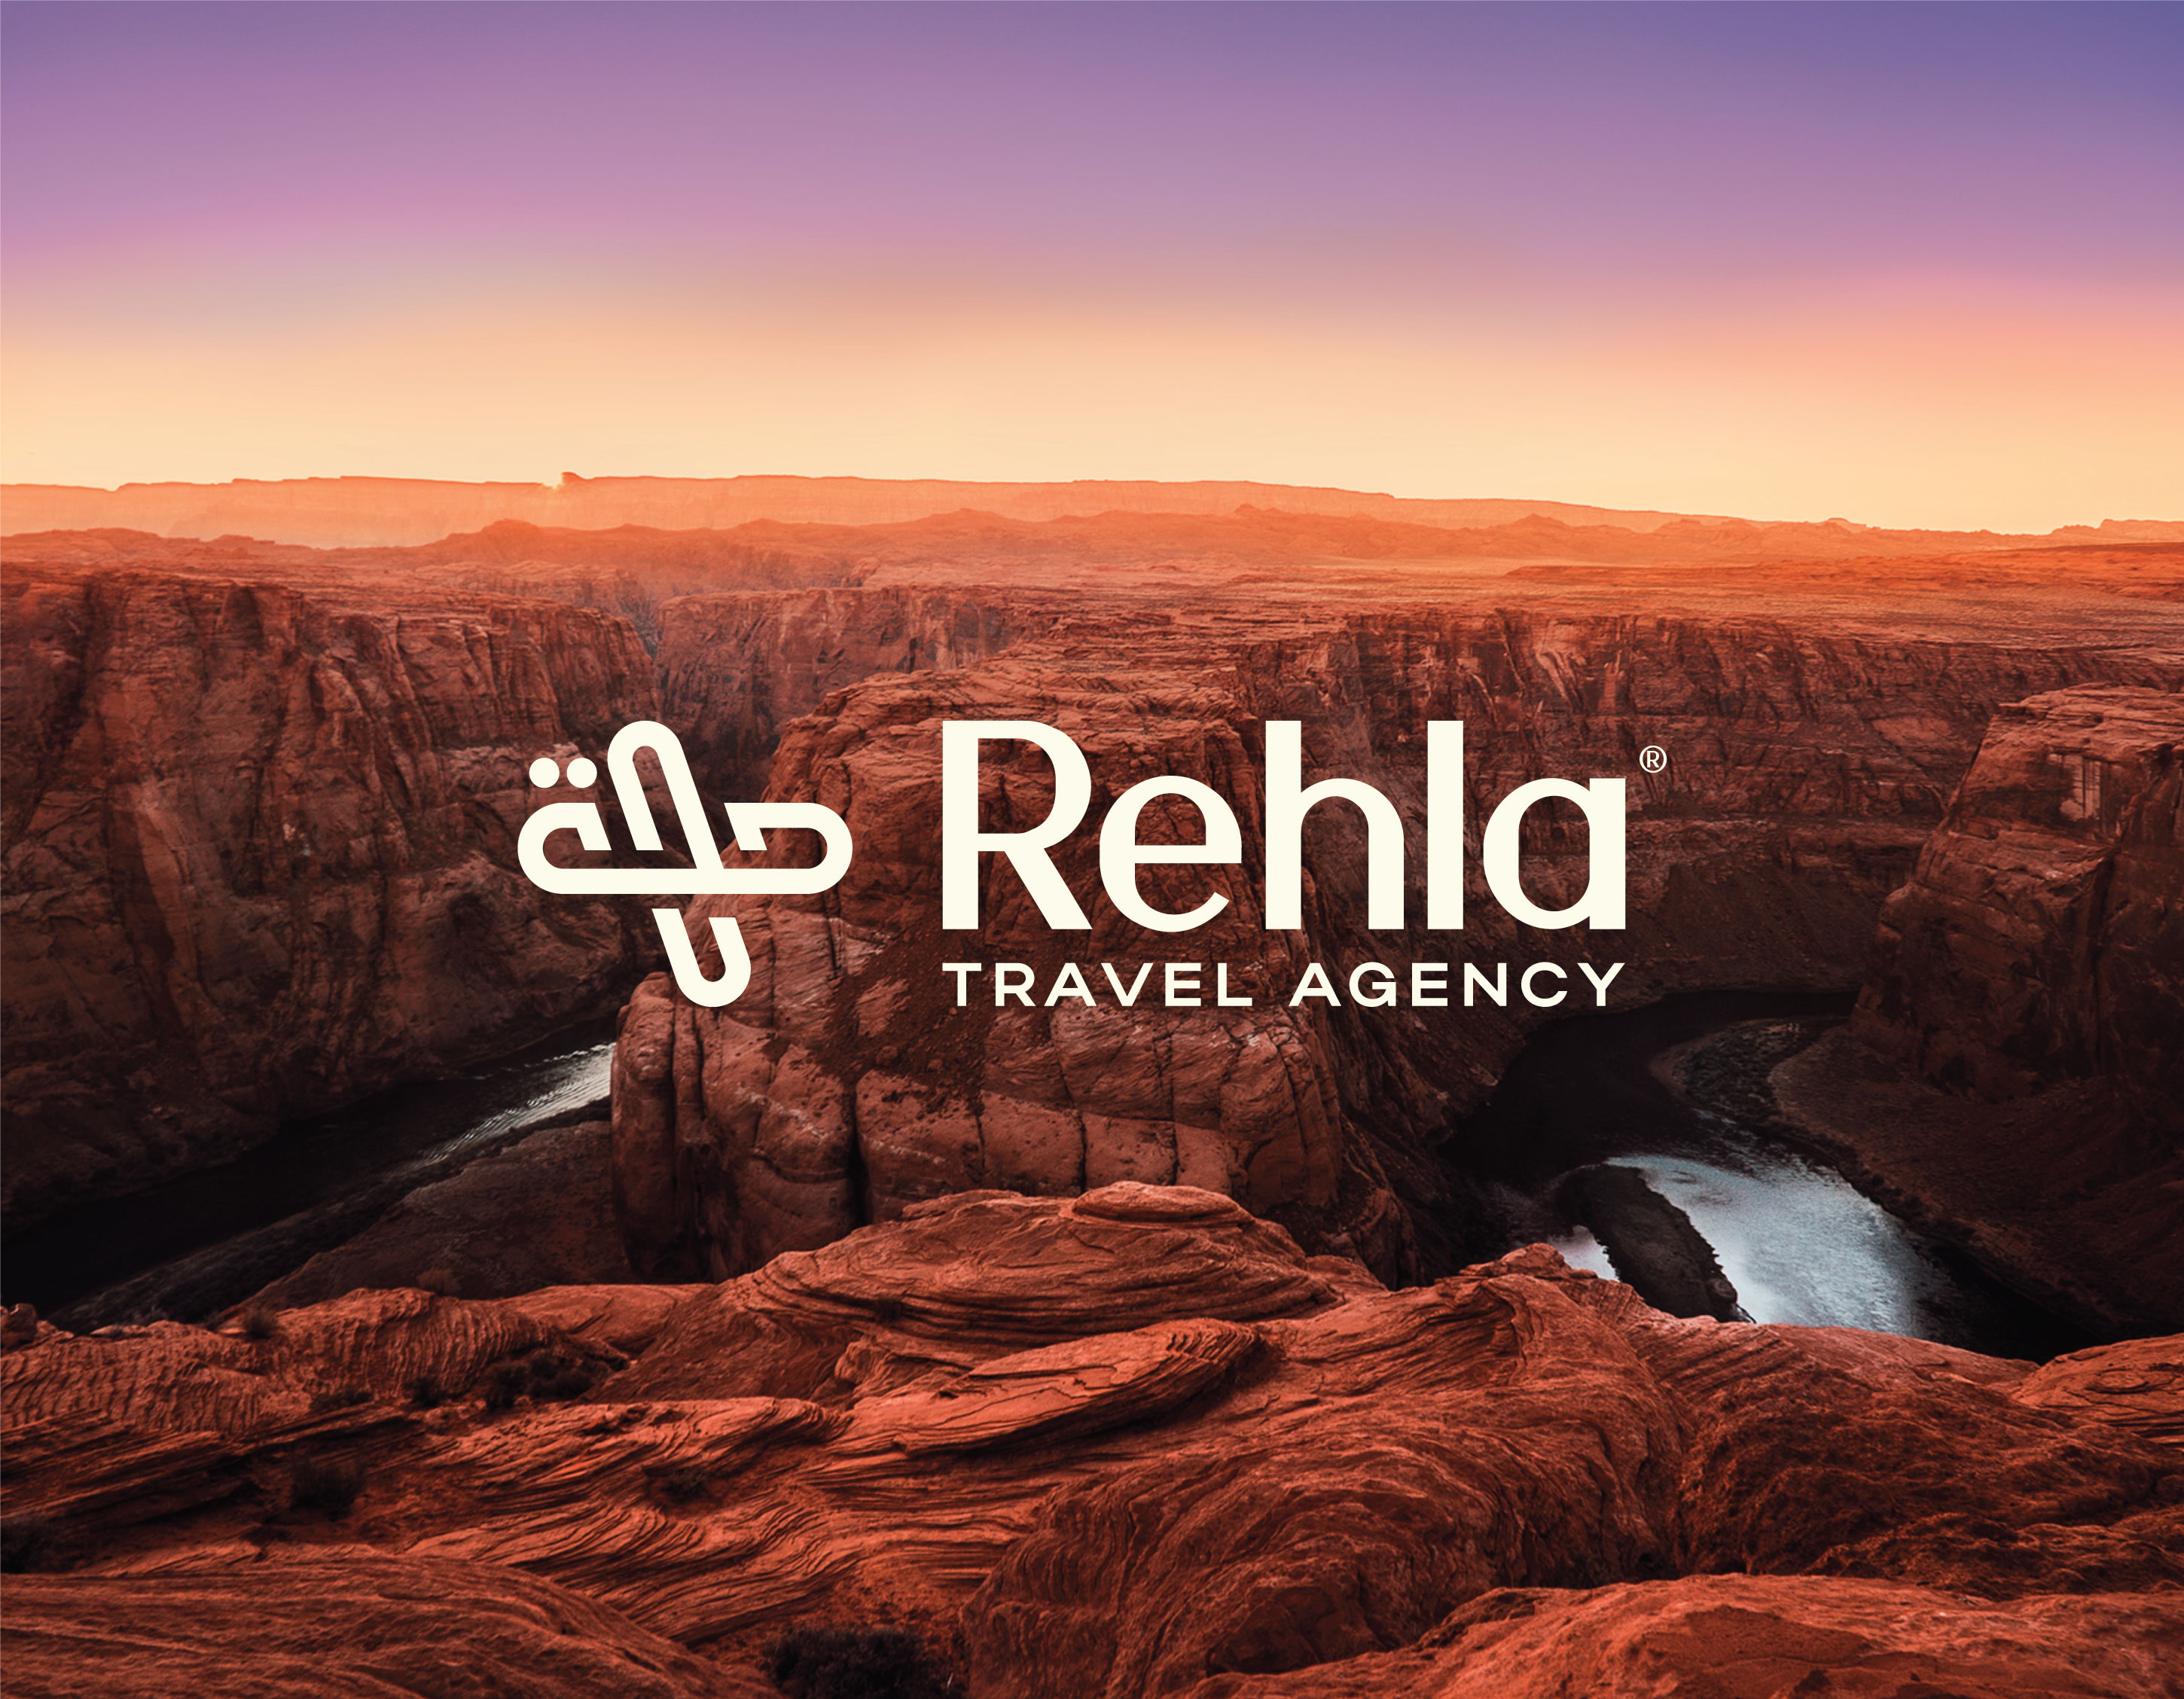 Samar Abdelmonem Creates Rehla Travel Brand Identity from Palestine